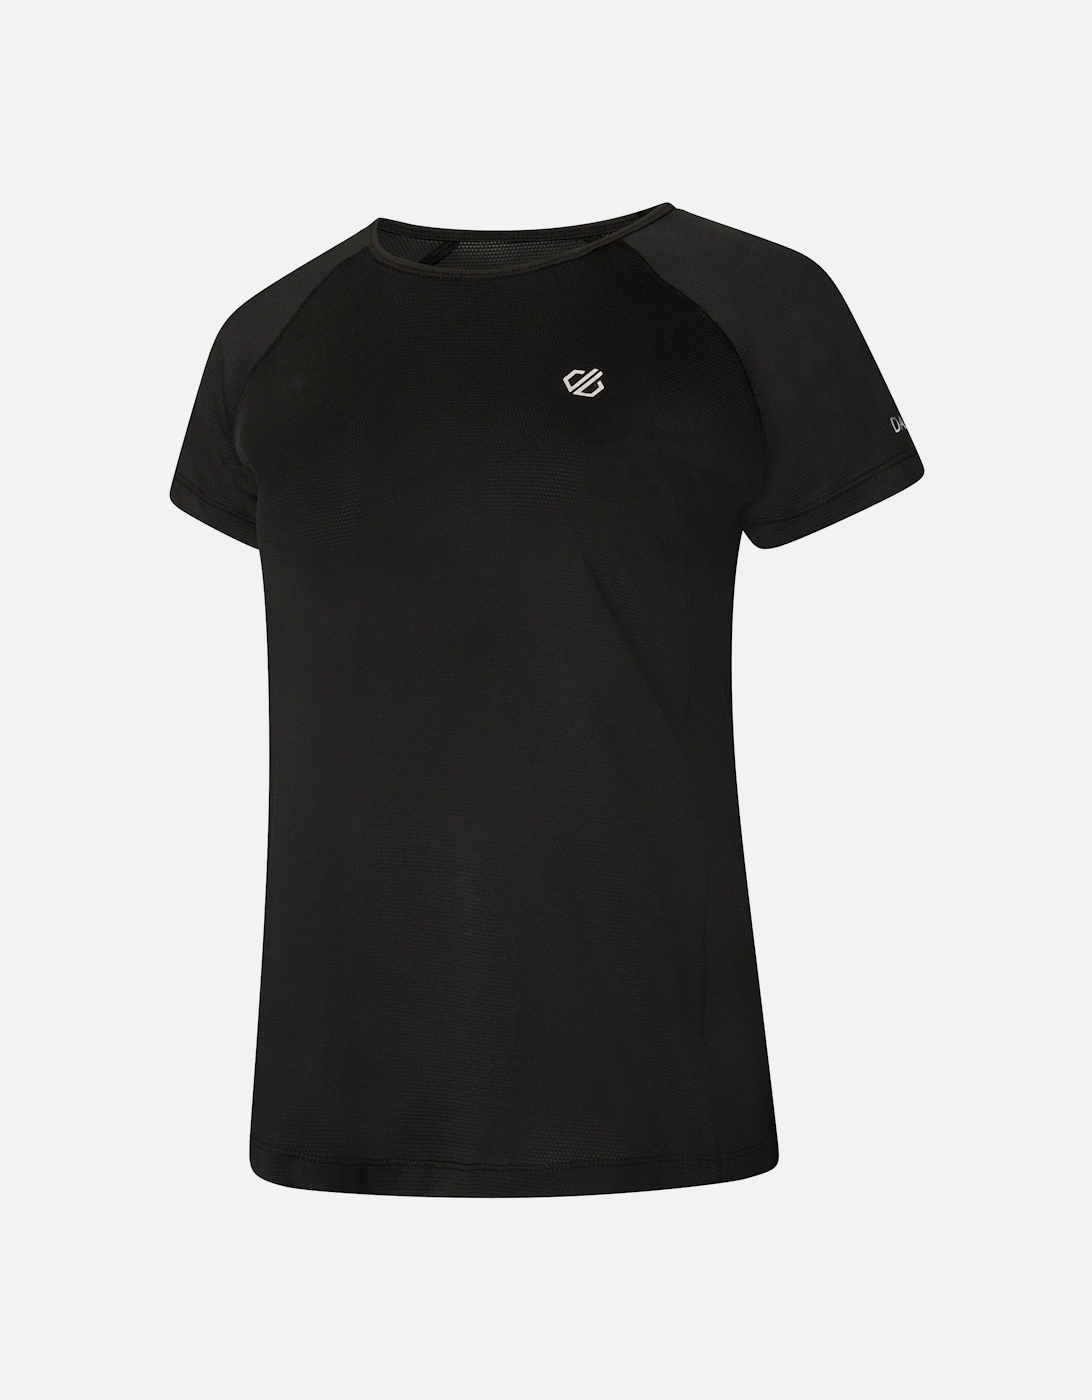 Womens/Ladies Corral T-Shirt